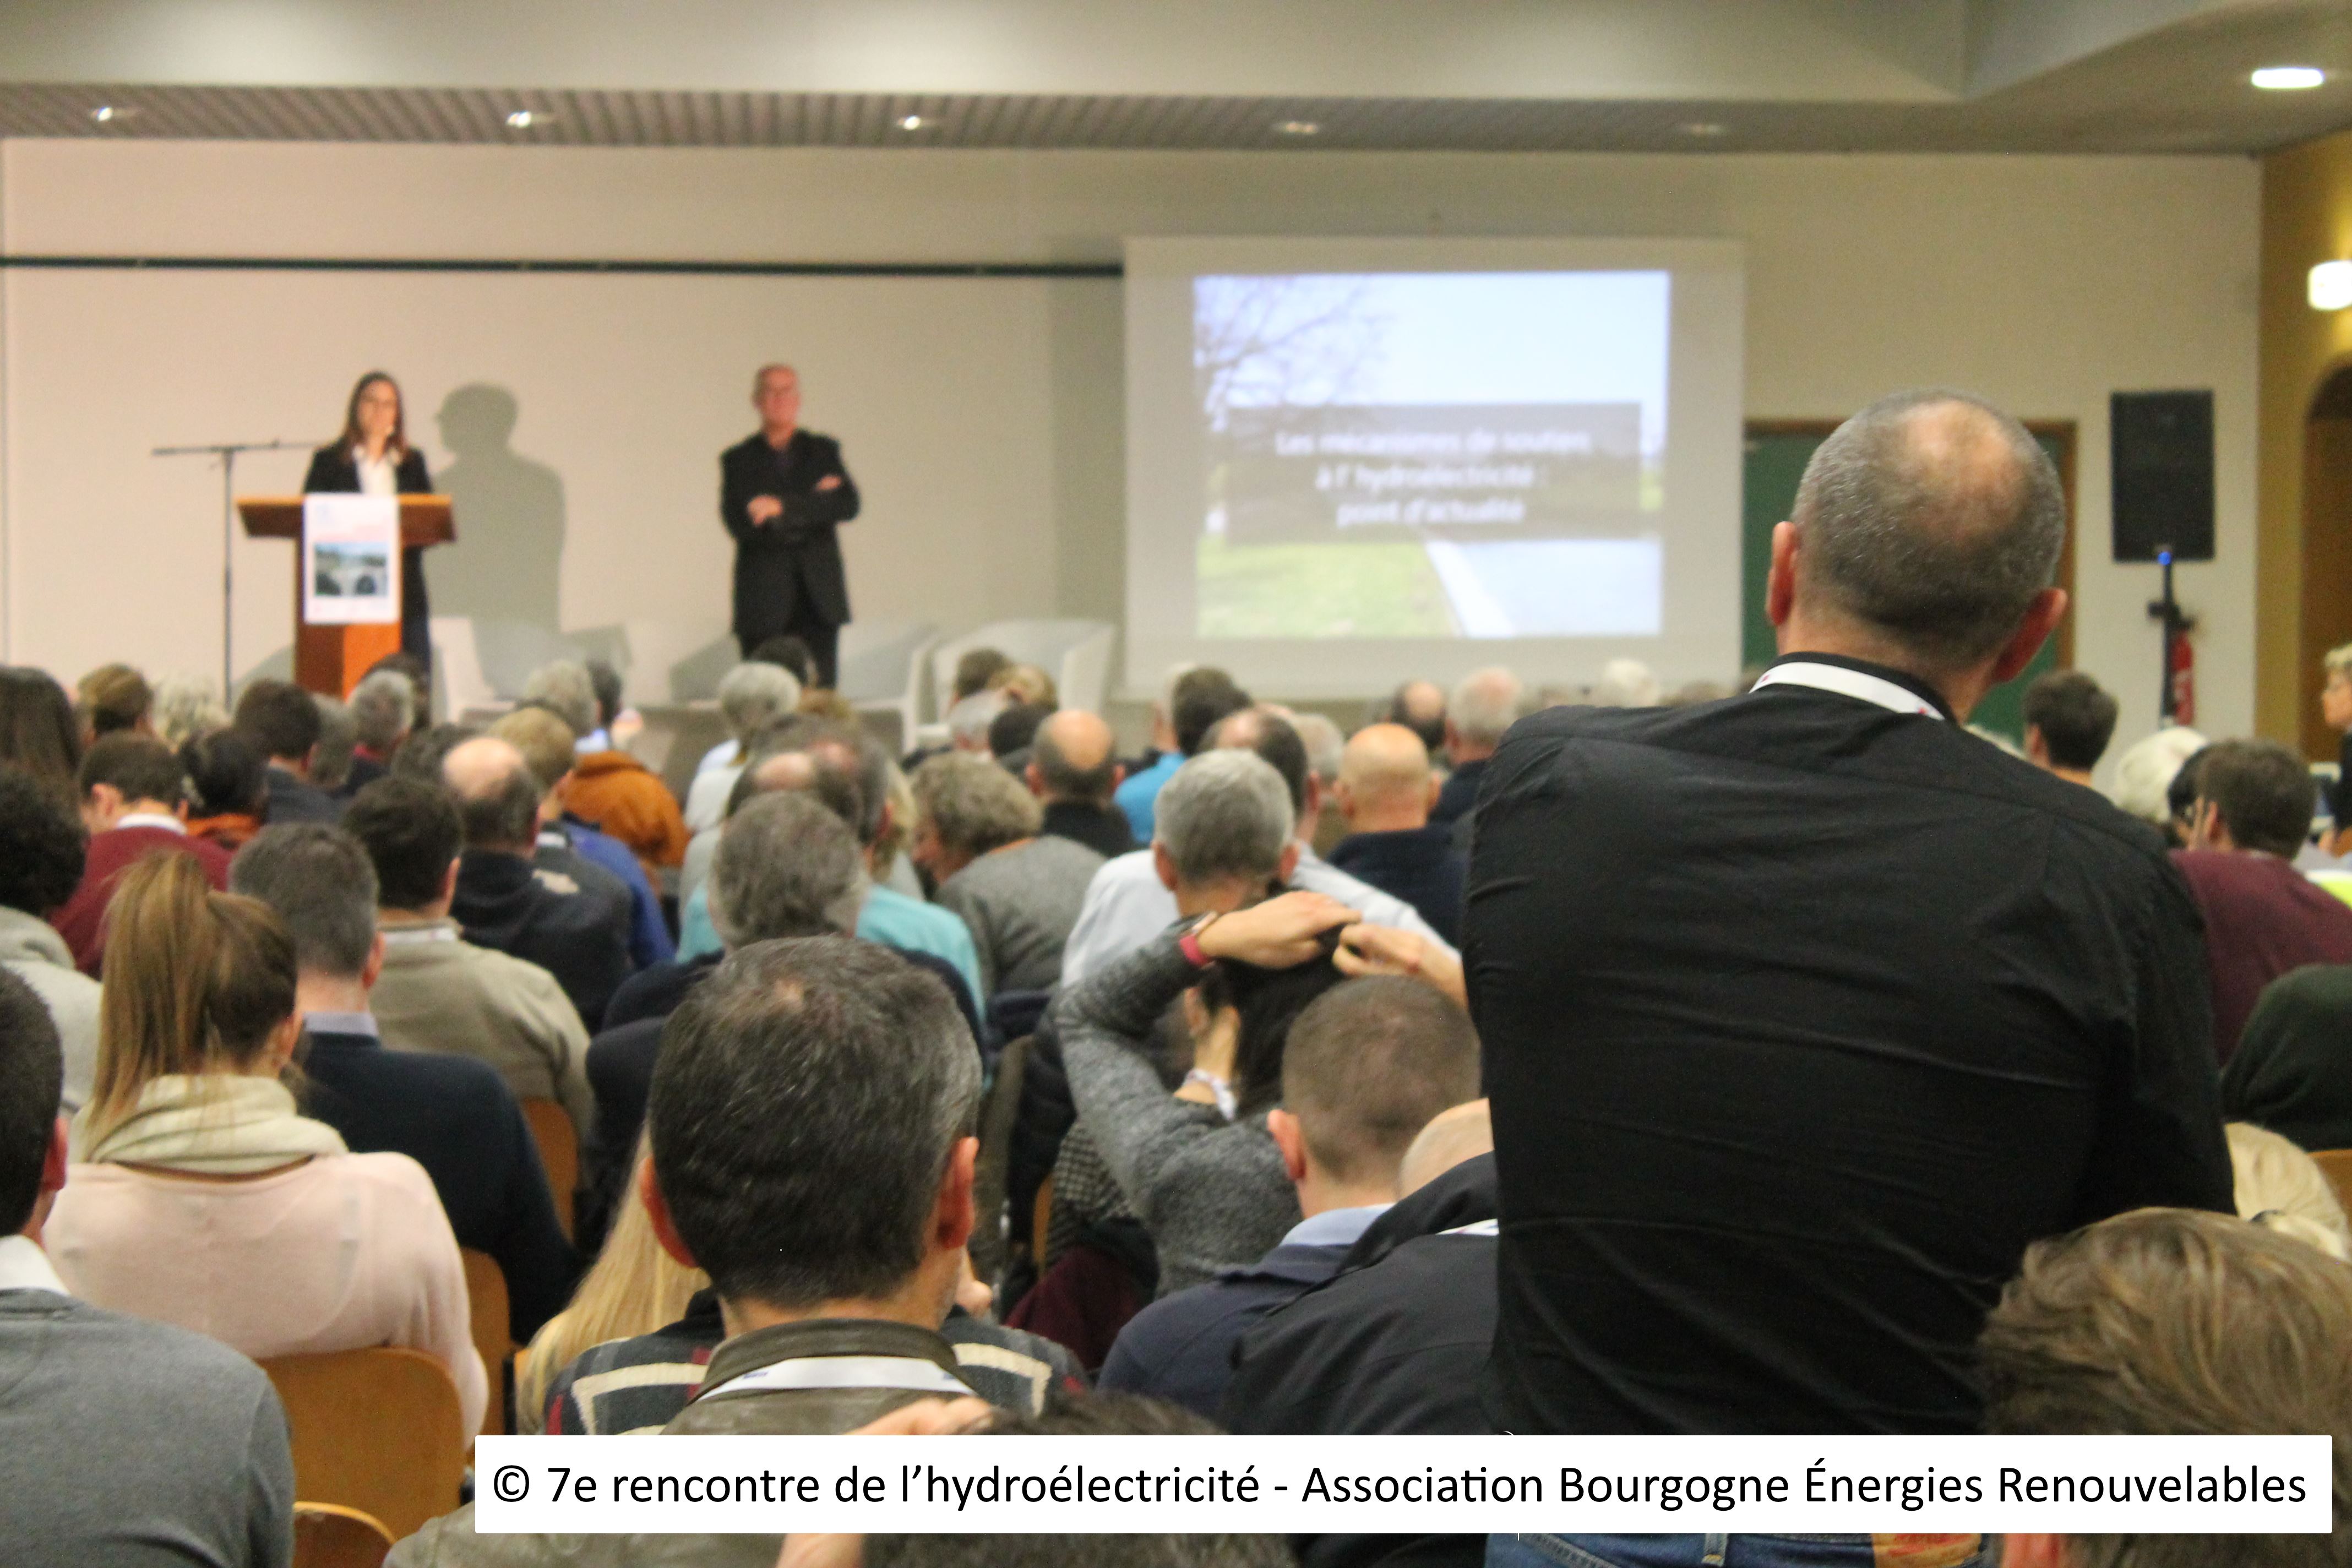 6 - © 7e rencontre de l’hydroélectricité - Association Bourgogne Énergies Renouvelables